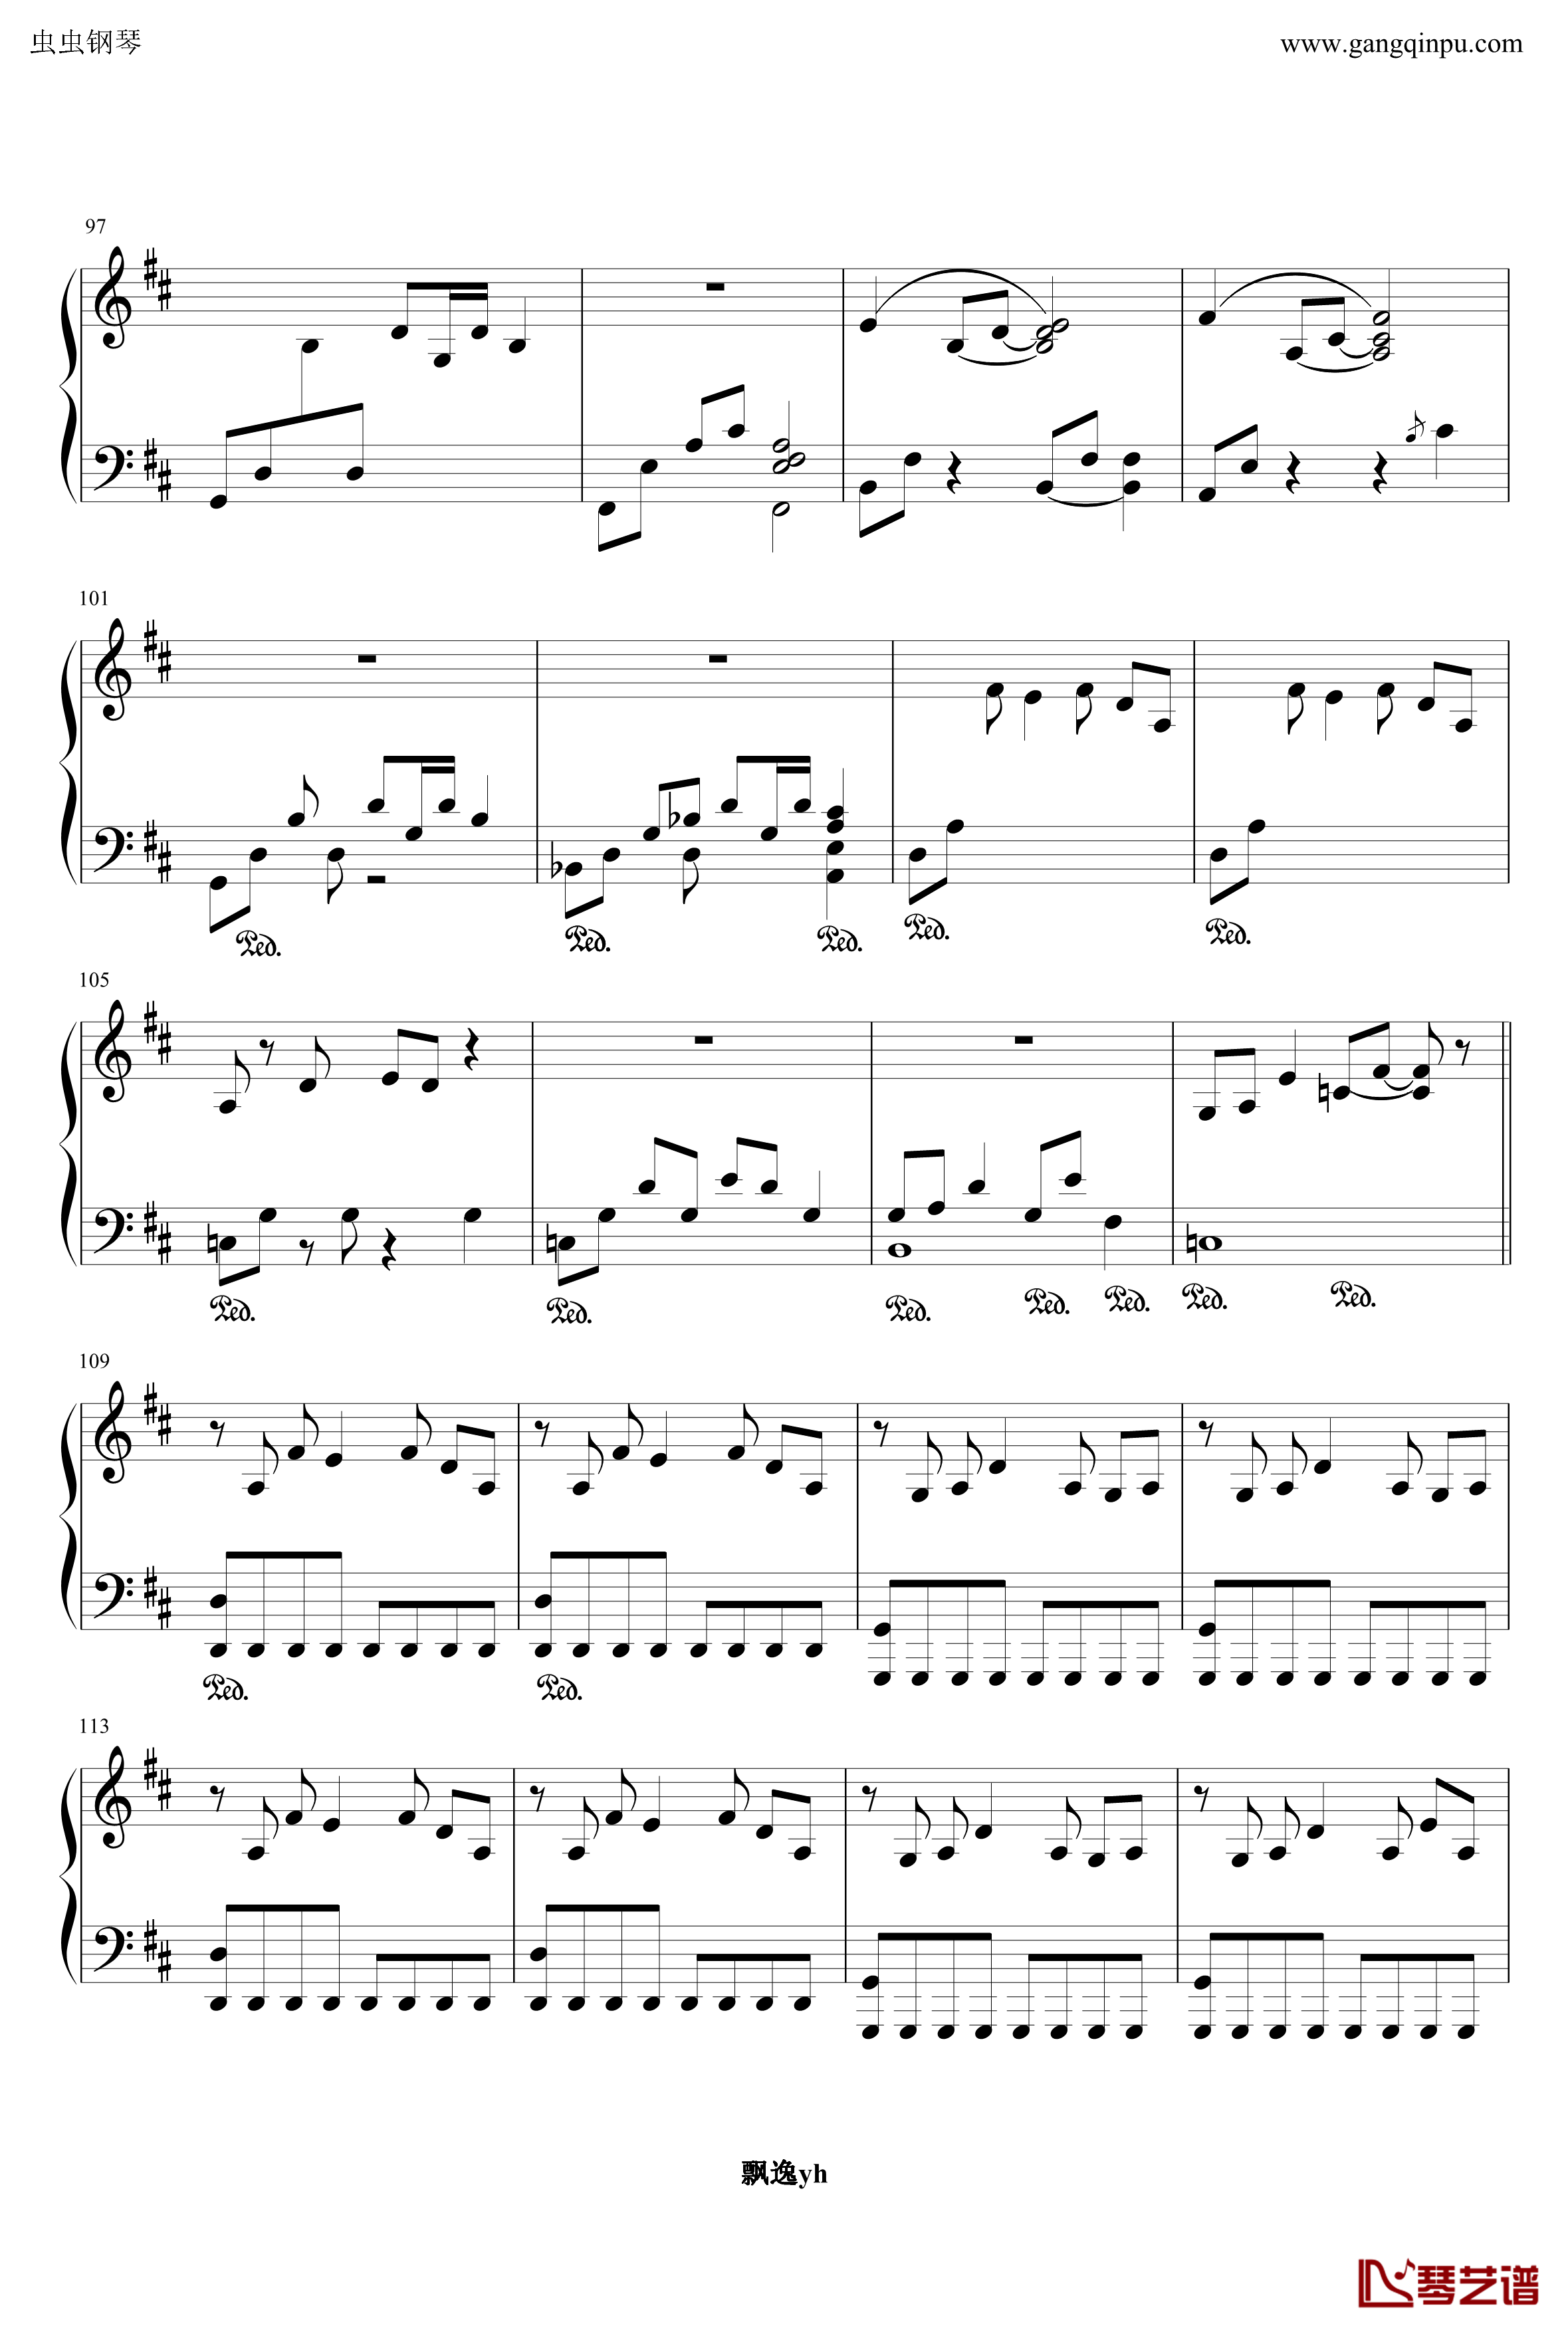 明珠港钢琴谱-完整版-冒险岛